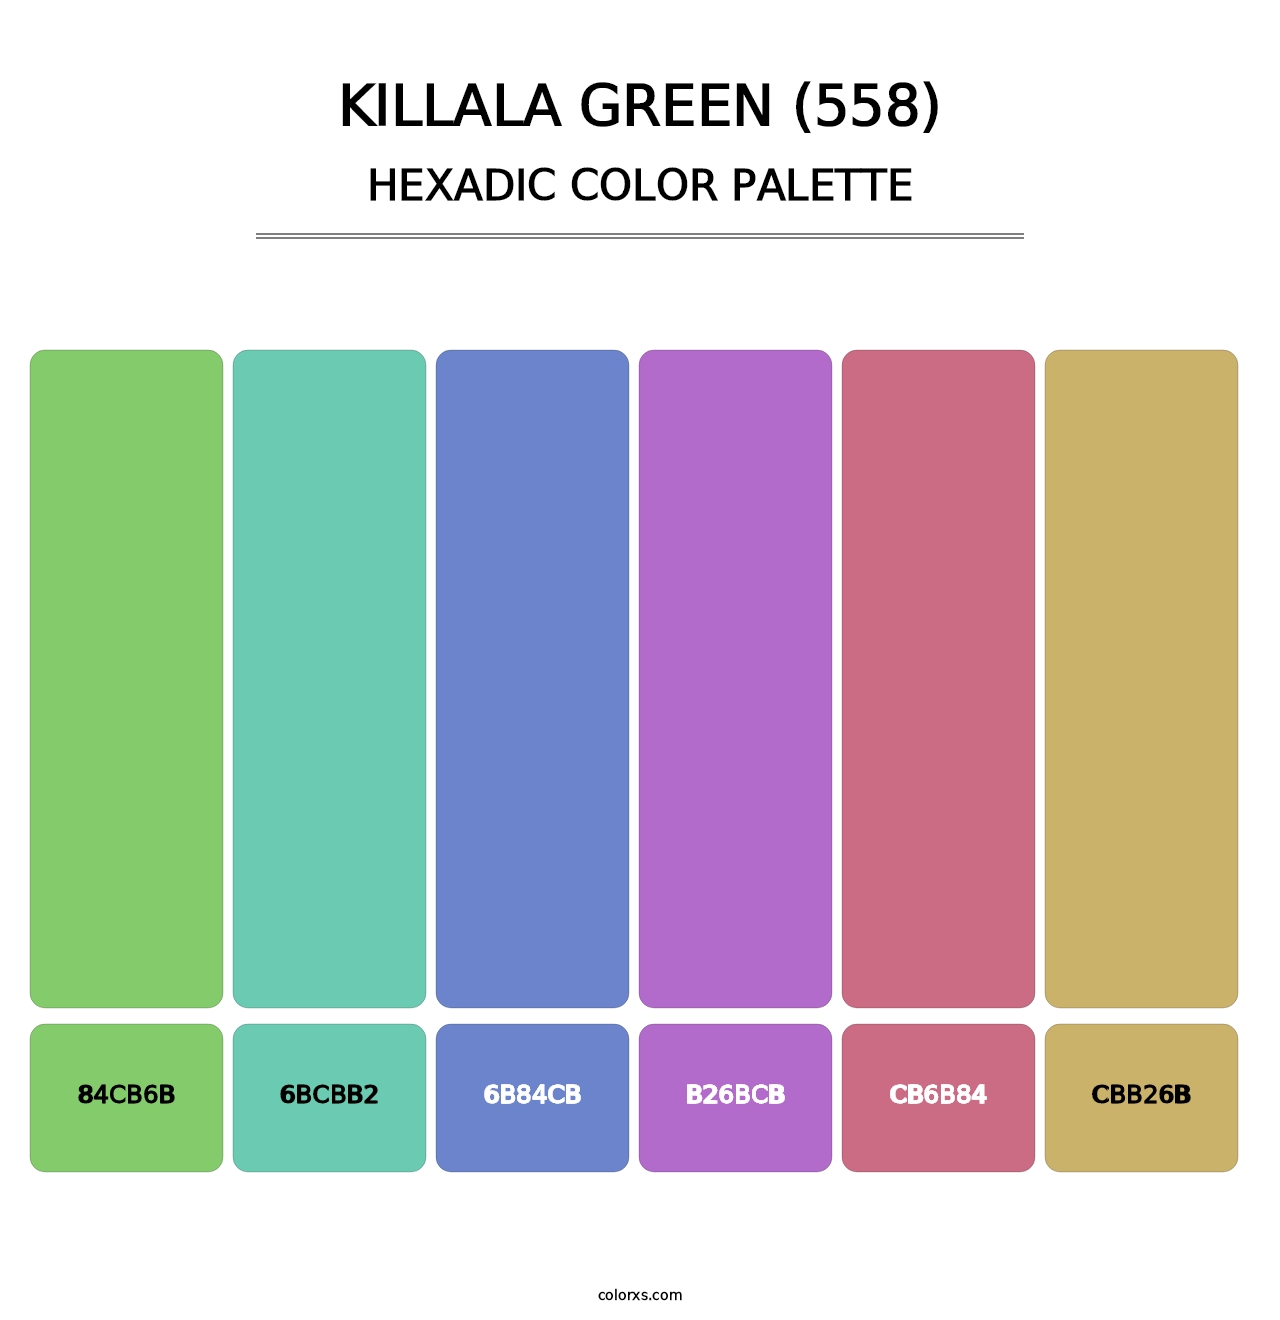 Killala Green (558) - Hexadic Color Palette